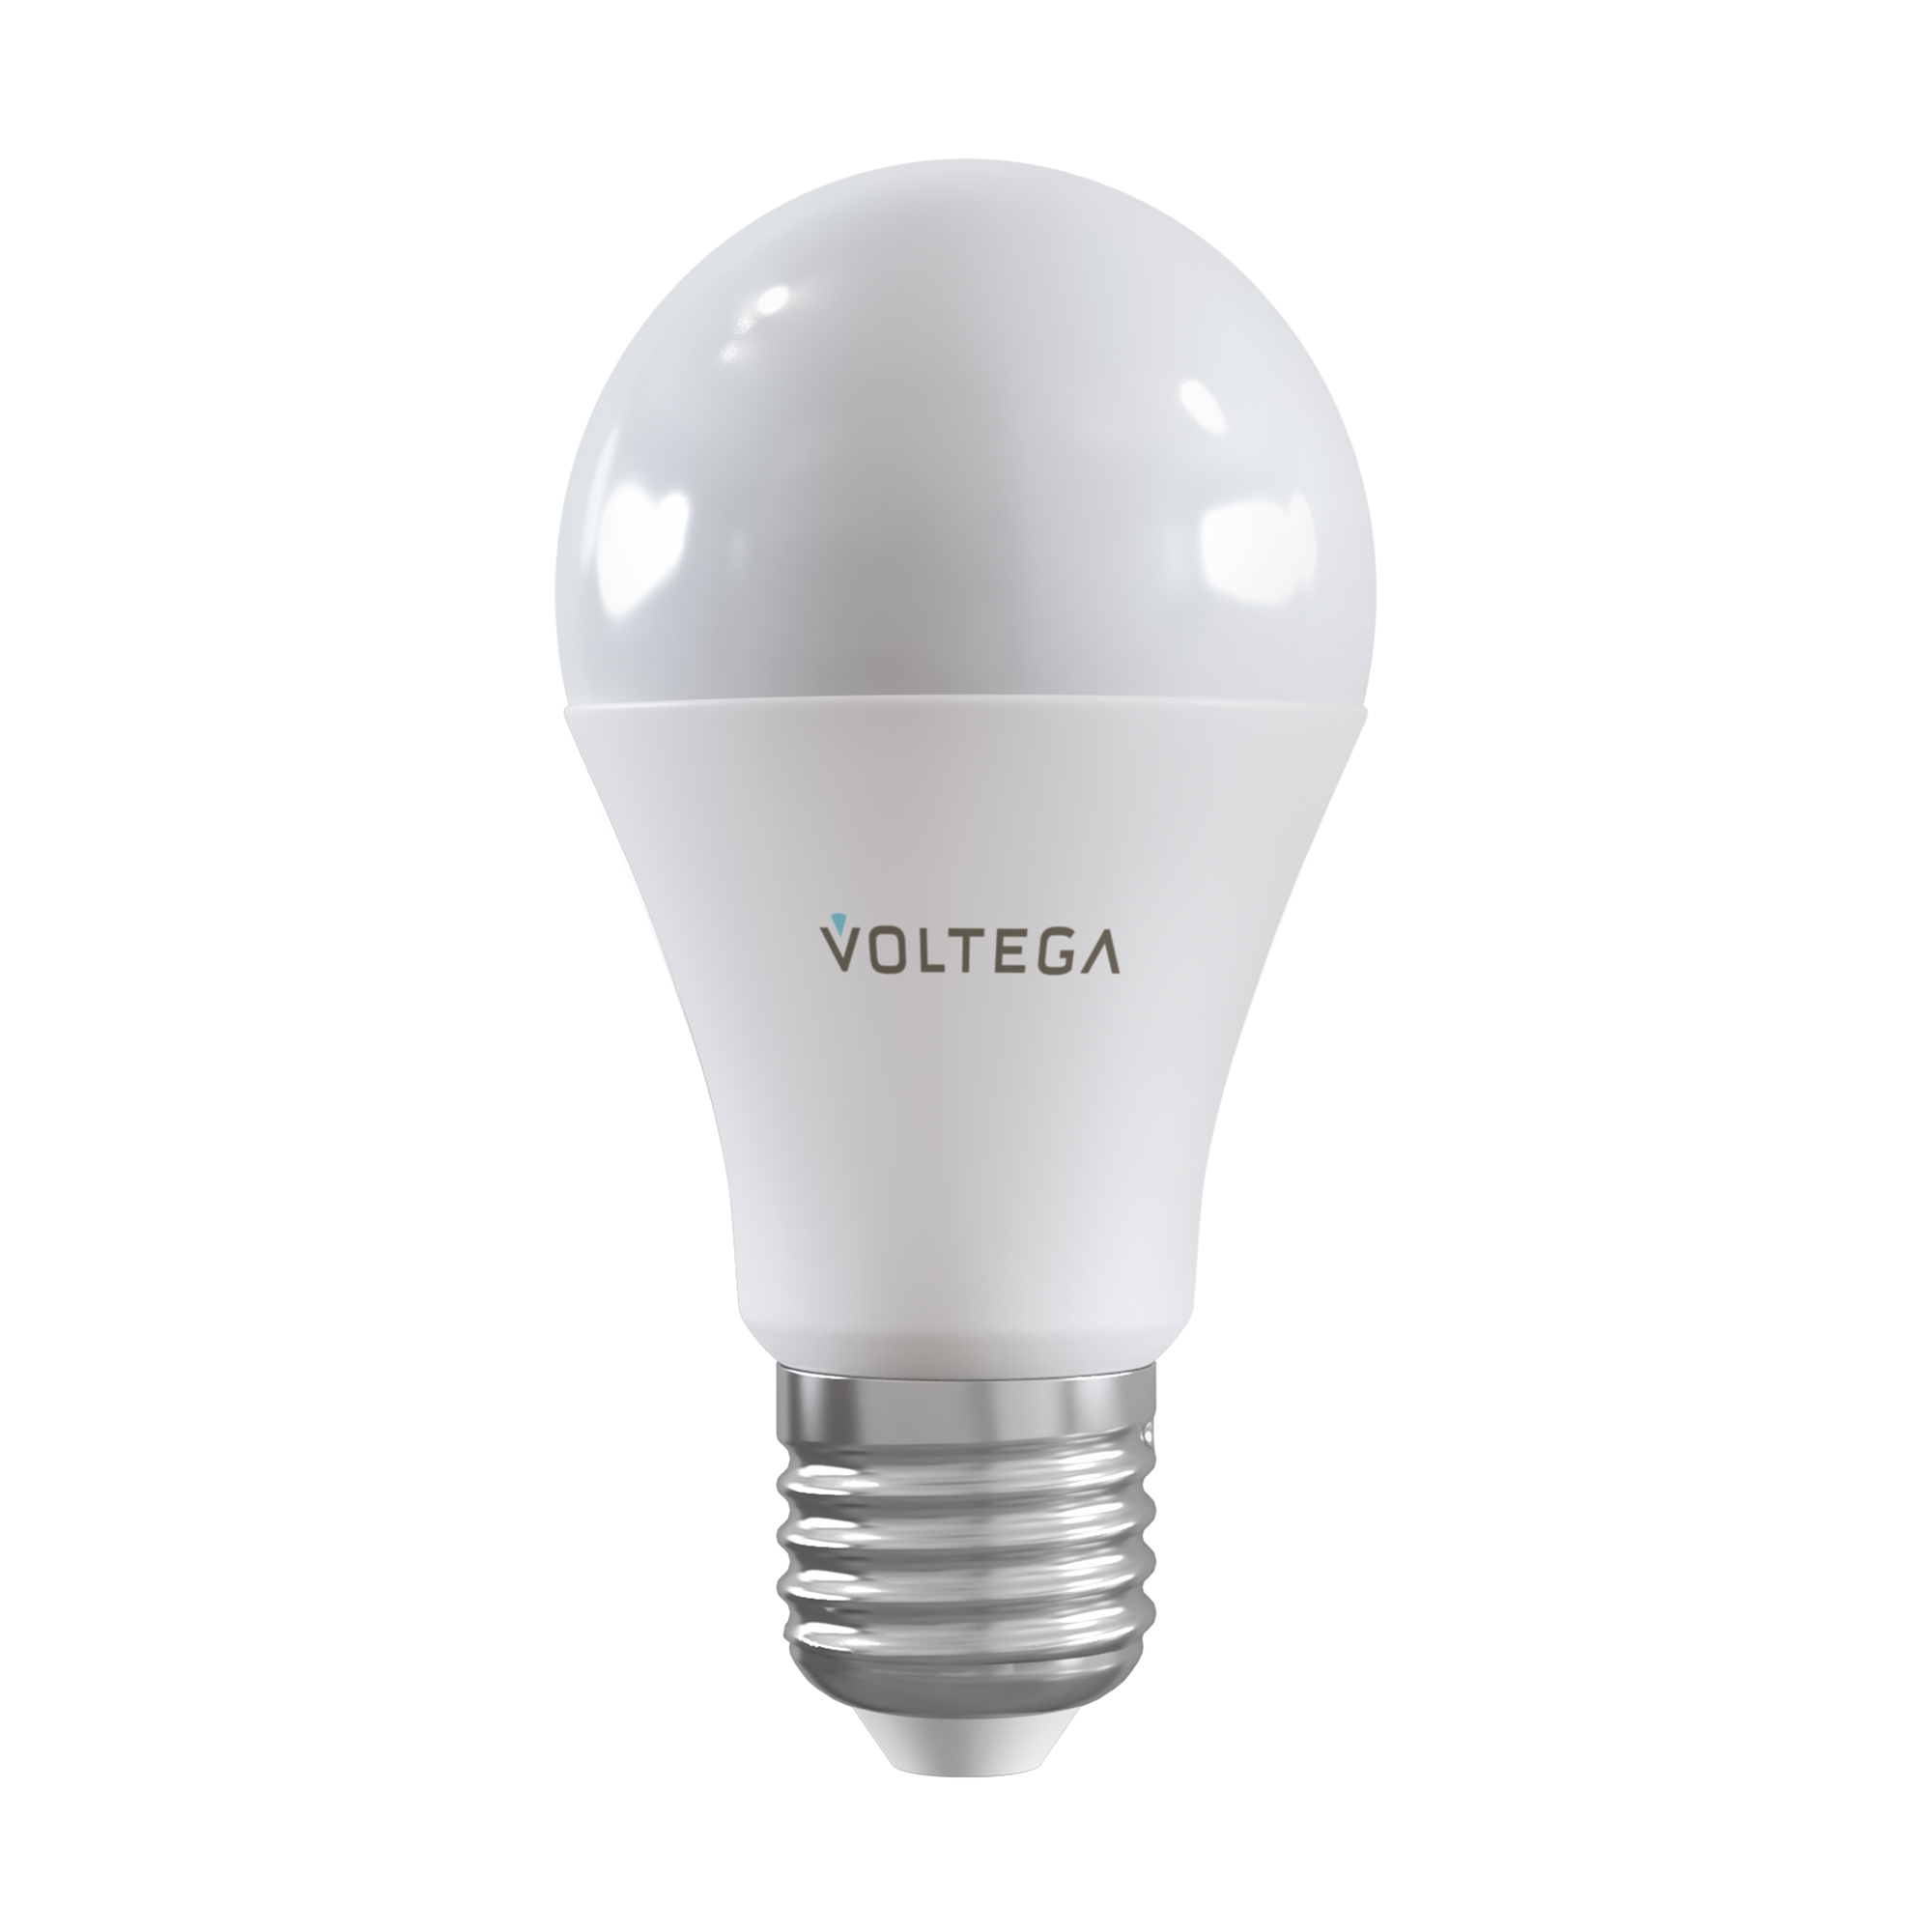 Где купить Лампа Voltega WI-FI 2429 Voltega 